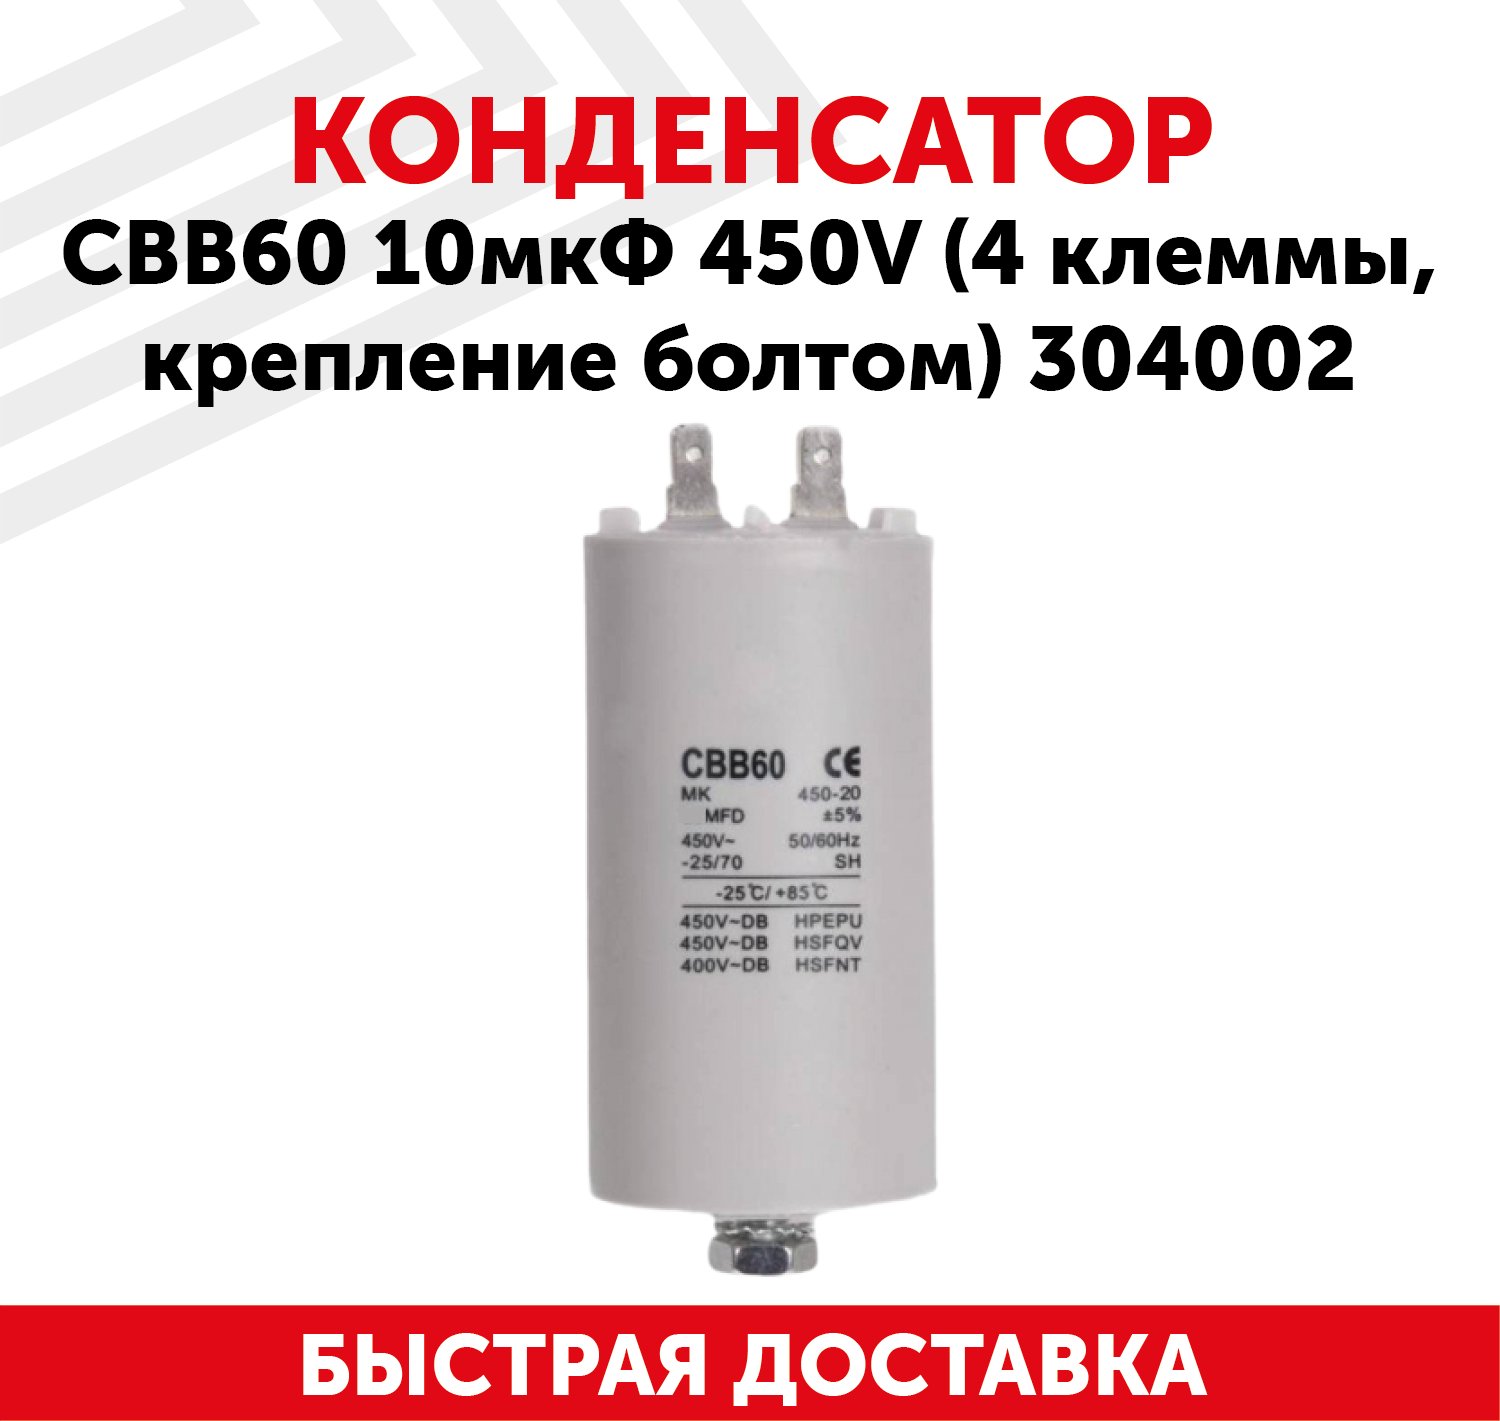 Конденсатор CBB60 для электро- и бензоинструмента, 10мкФ, 450В, 4 клеммы, крепление болтом, 304002